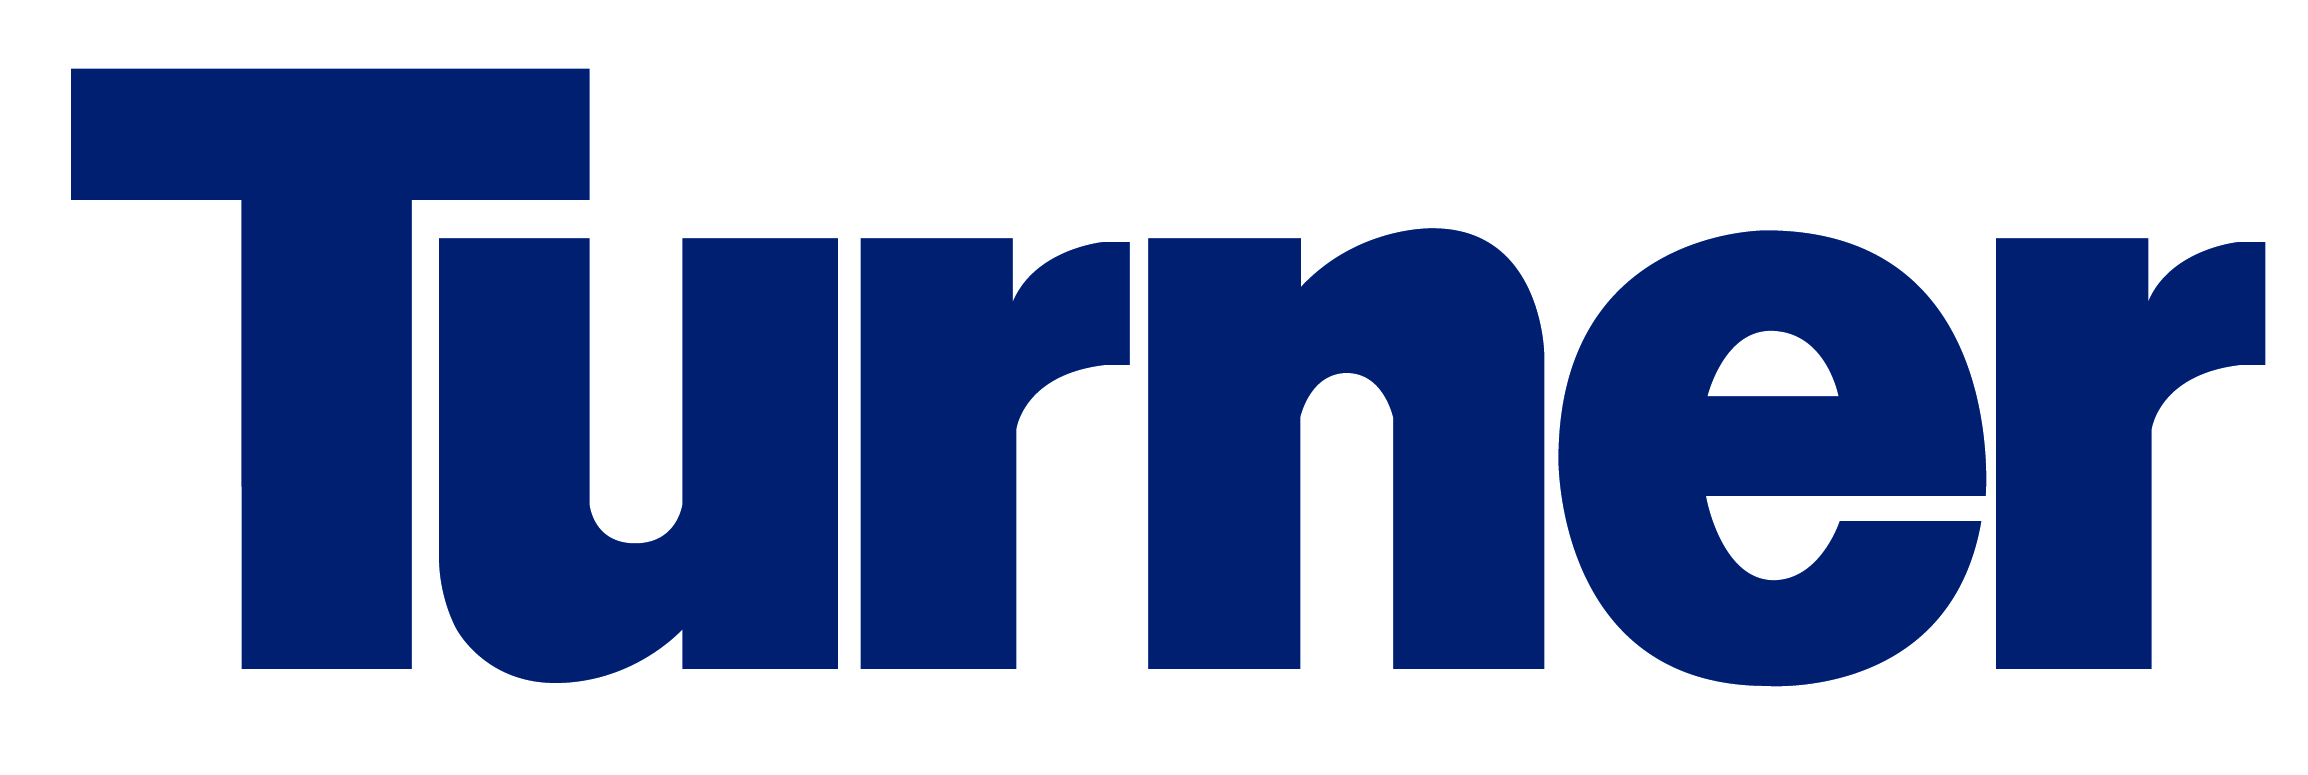 Turner Construction Company logo